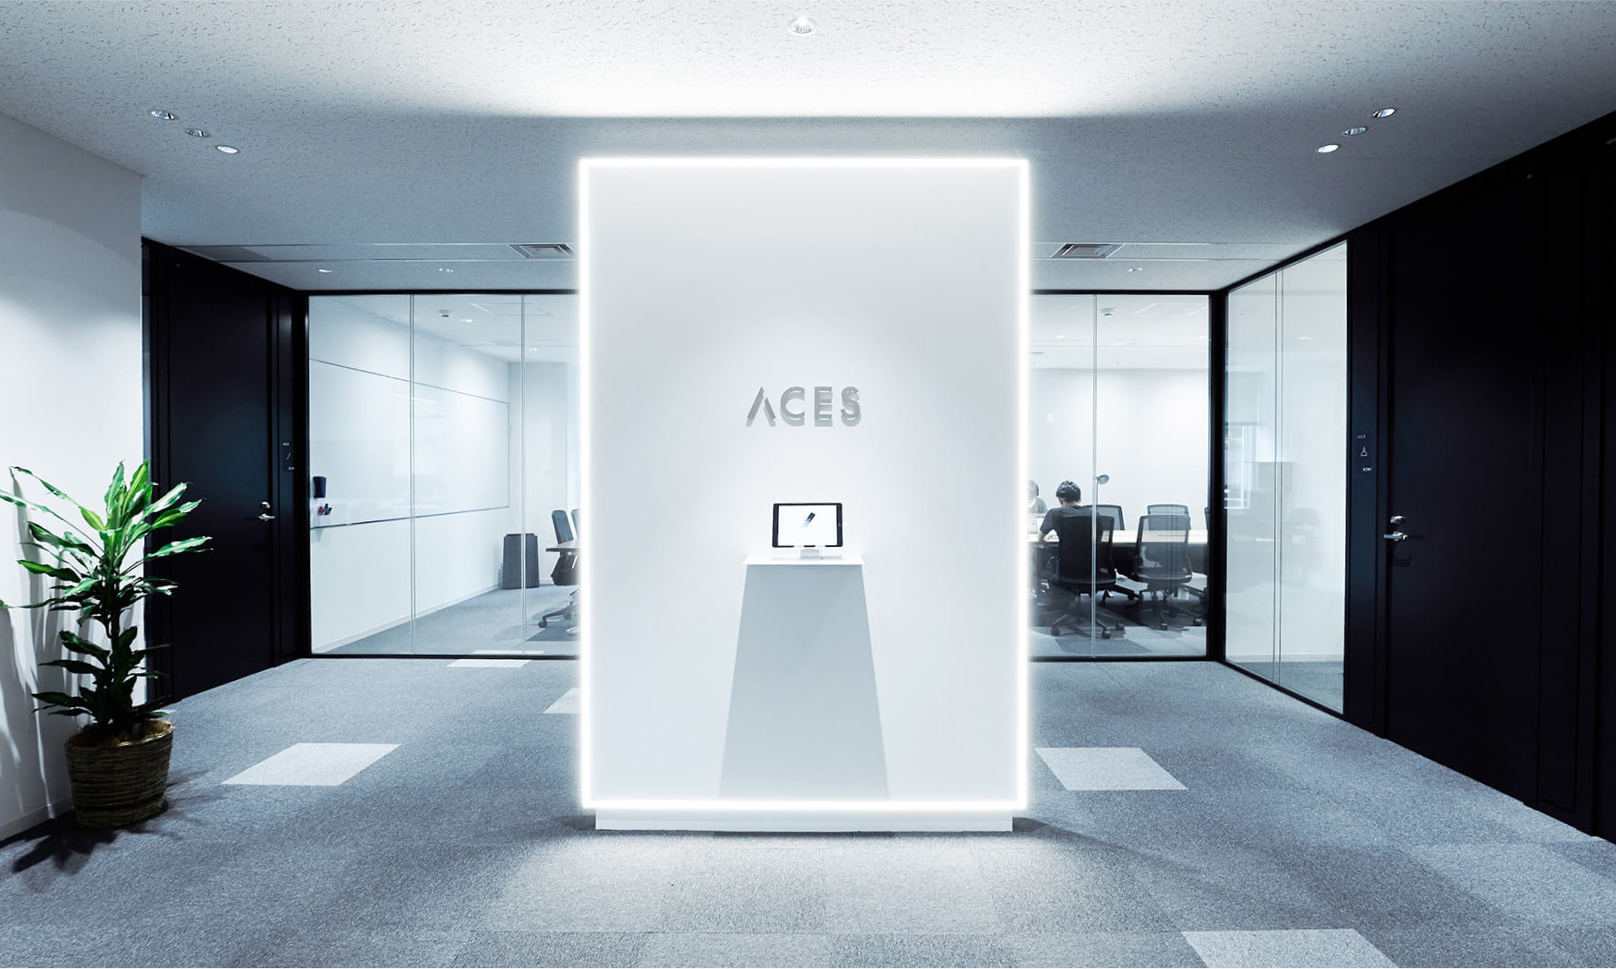 写真：近未来的な雰囲気のオフィスの入り口。ACESと書かれた看板が中央に見える。